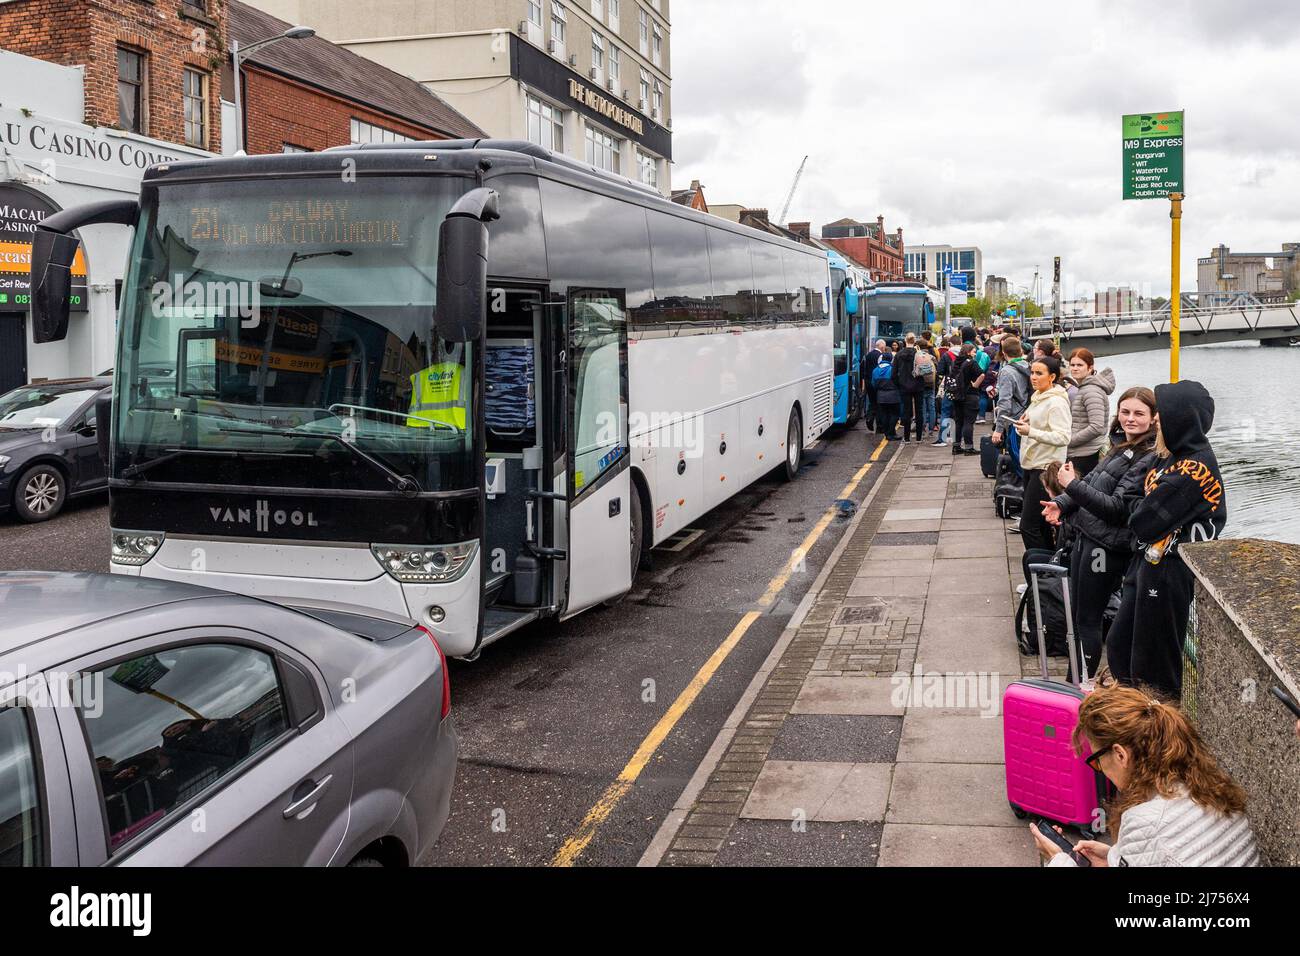 Cork, Irland. 6.. Mai 2022. Busbetreiber sind besorgt über die Pläne des Stadtrats von Cork, im Rahmen des MacCurtain Street Public Transport Improvement Scheme Bus- und Bushaltestellen vom St. Patrick's Quay im Stadtzentrum zu verlegen. Zu den Haltestellen, die umgezogen werden sollen, gehören West Cork Connect, Aircoach, Citylink und GoBus. Busbetreiber behaupten, dass das Verschieben der Haltestellen die Busverbindung beeinträchtigen würde. Cobh Connect hält am Quay. Quelle: AG News/Alamy Live News. Stockfoto